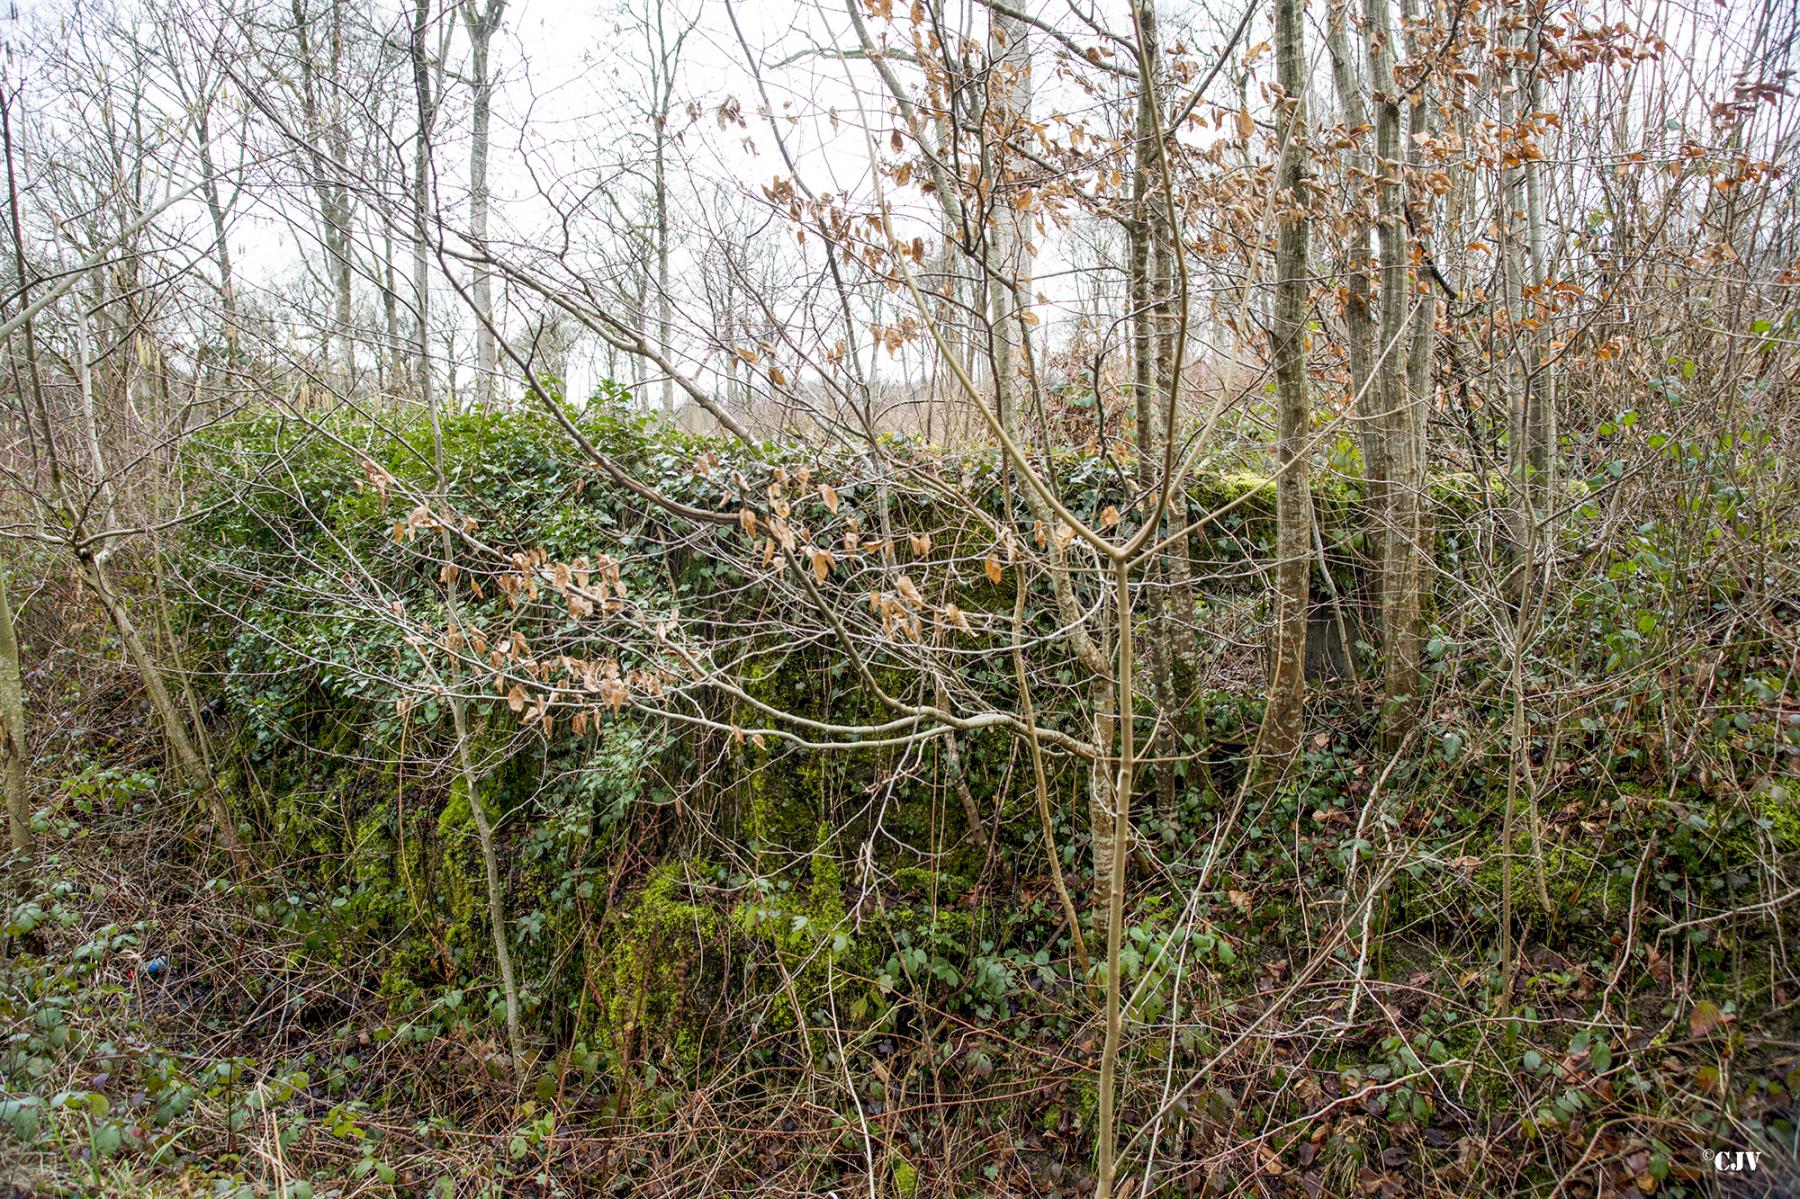 Ligne Maginot - B753 - LA SABLONNIERE - (Cuve pour arme d'infanterie) - Le bouclier est envahi par la végétation, on voit le créneau presque pas.